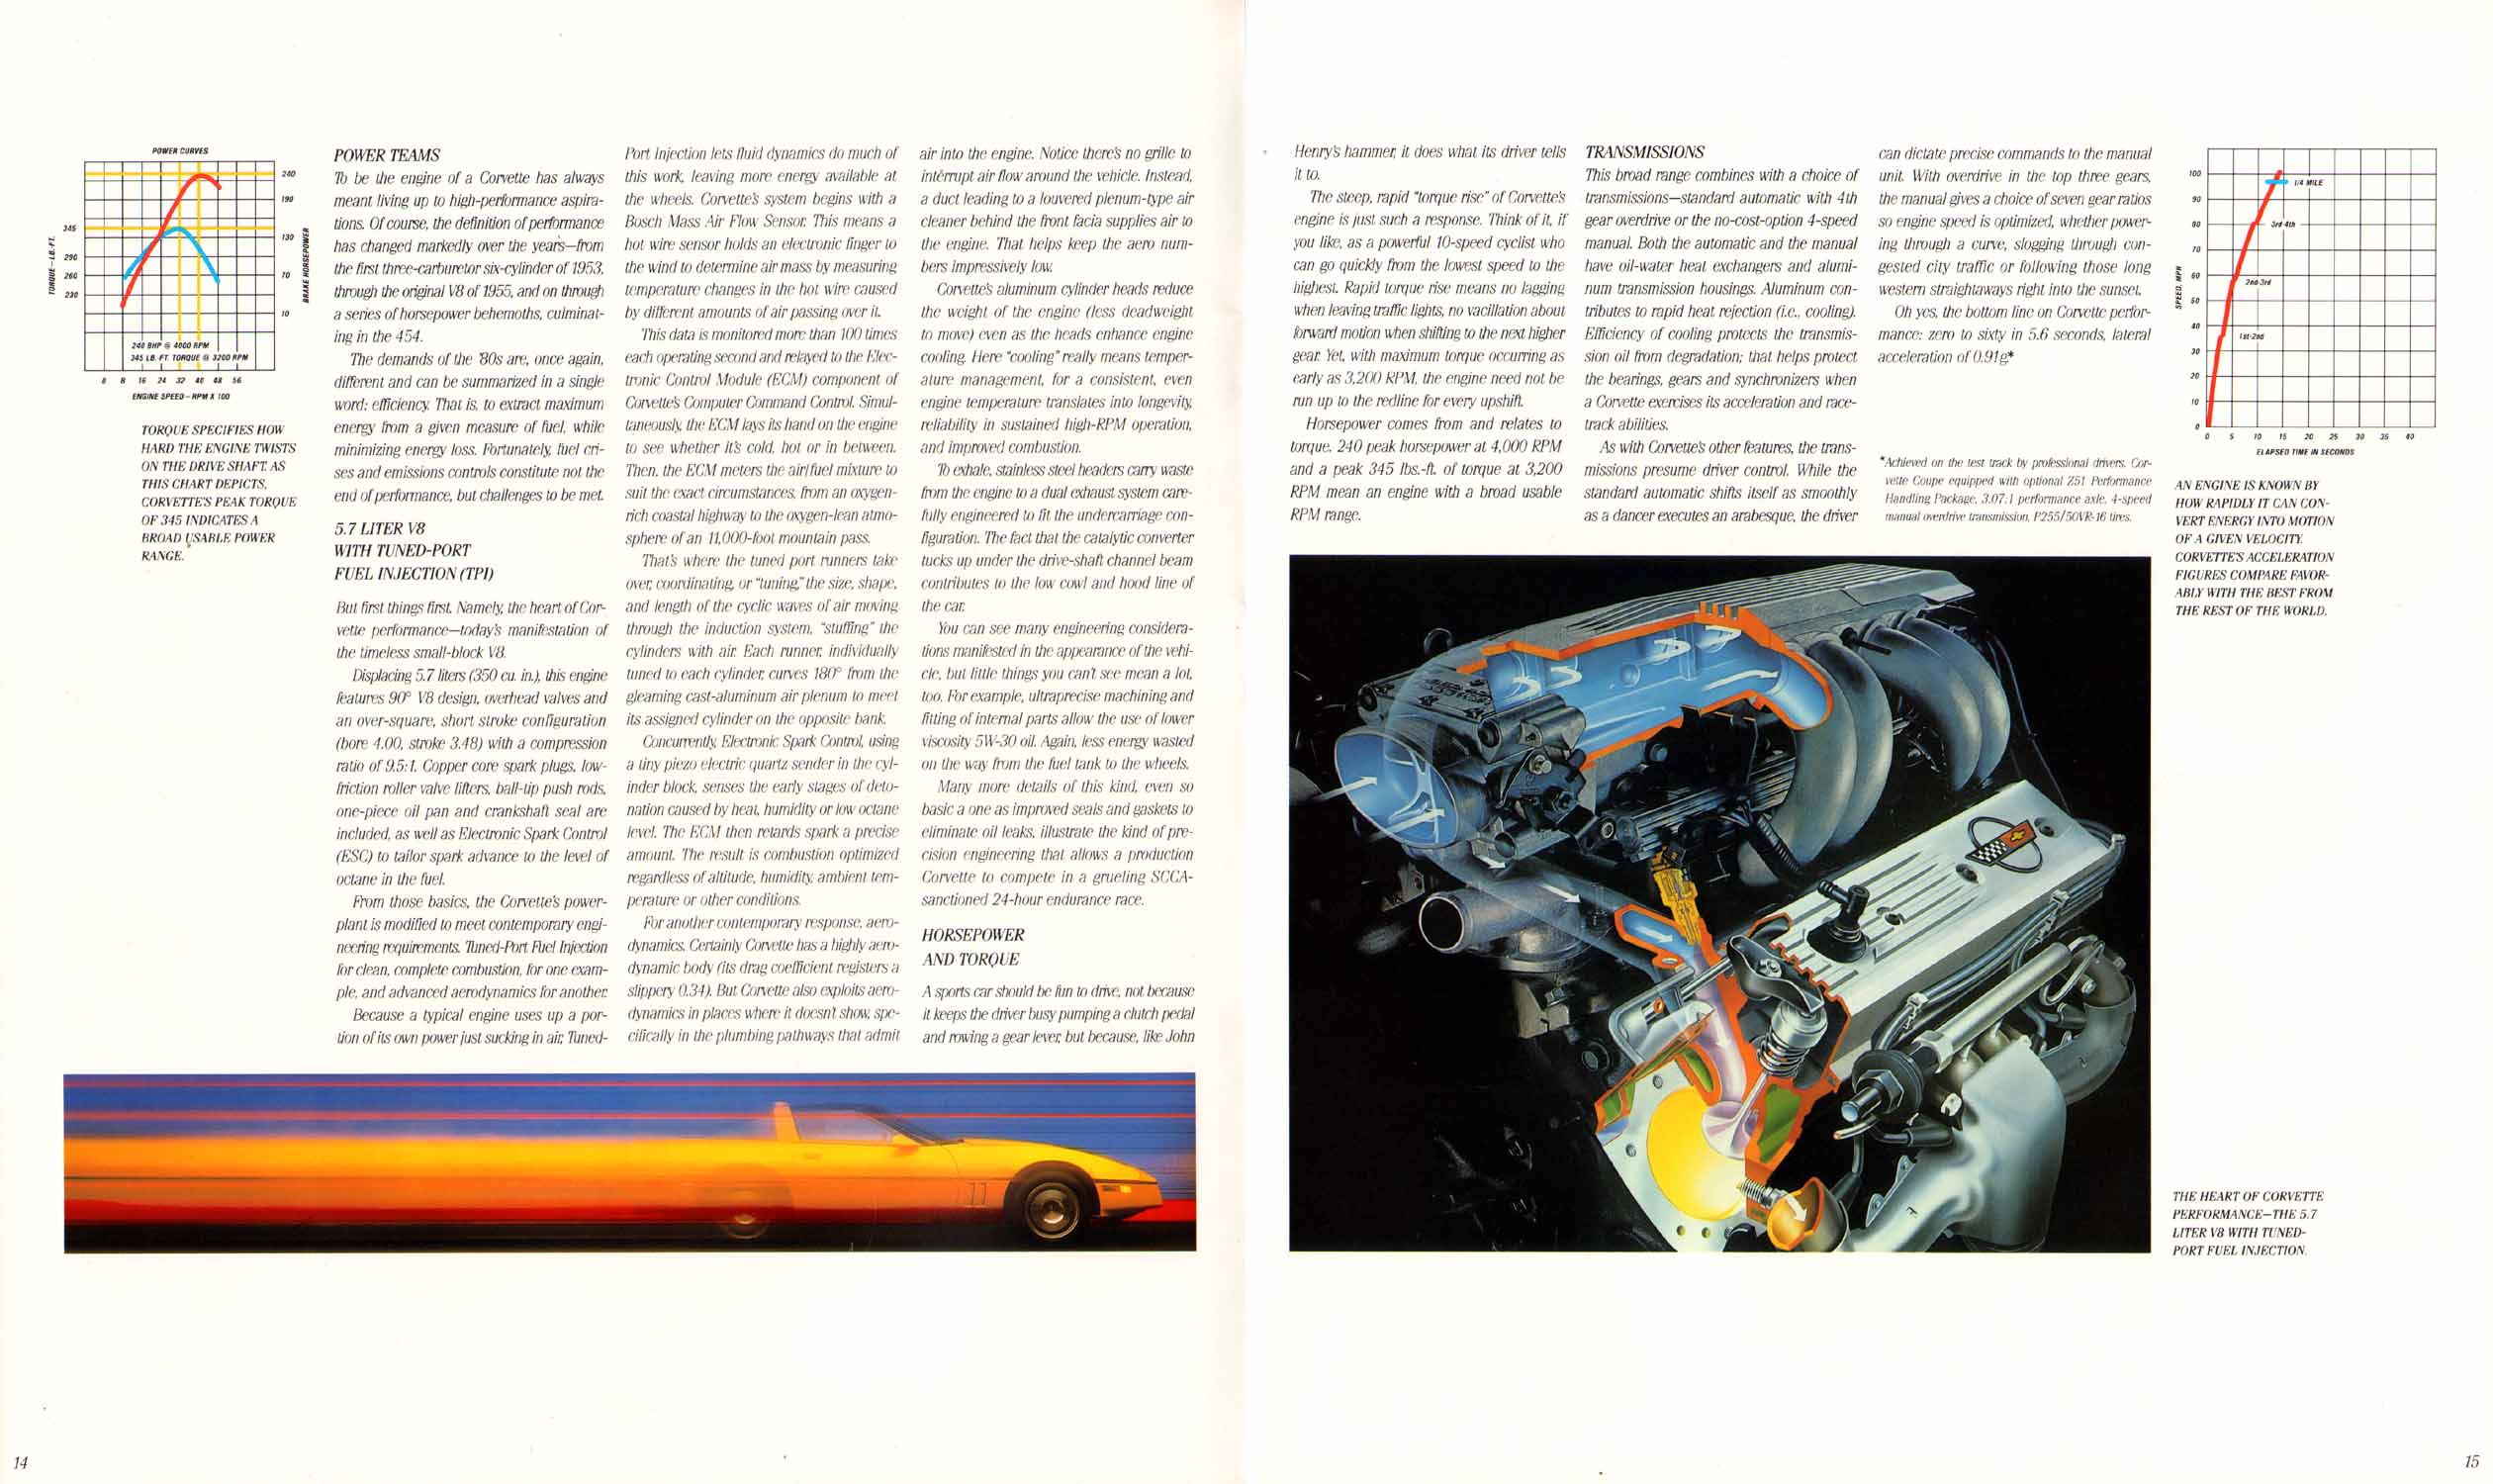 1987 Corvette Prestige Brochure Page 2